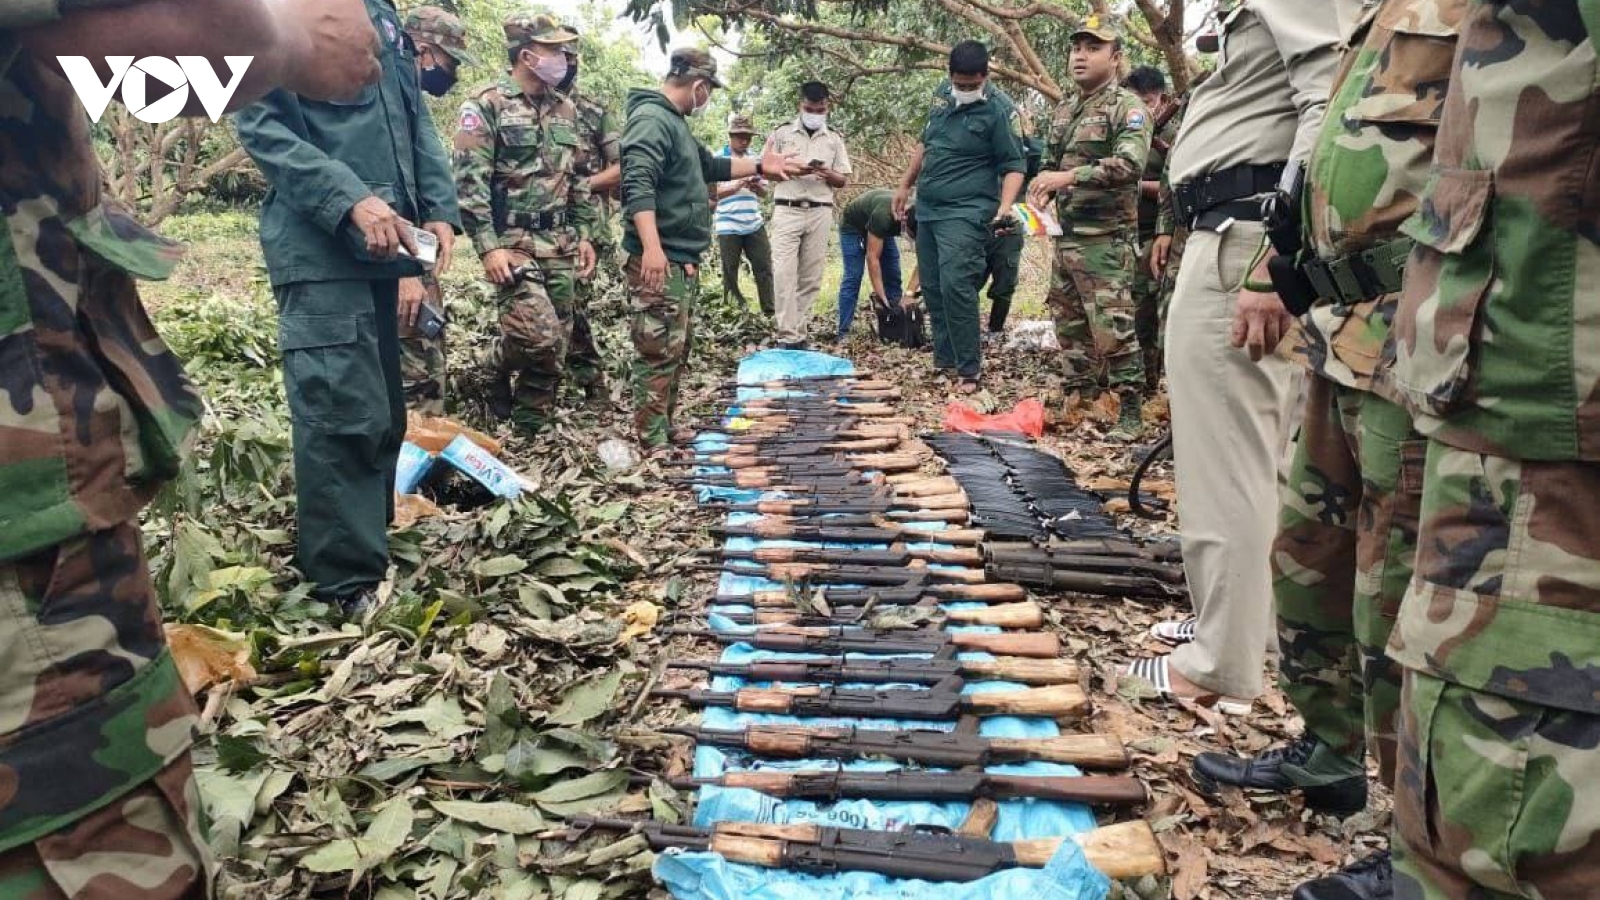 Campuchia phát hiện hơn 30 khẩu súng và nhiều đạn dược tại khu vực biên giới